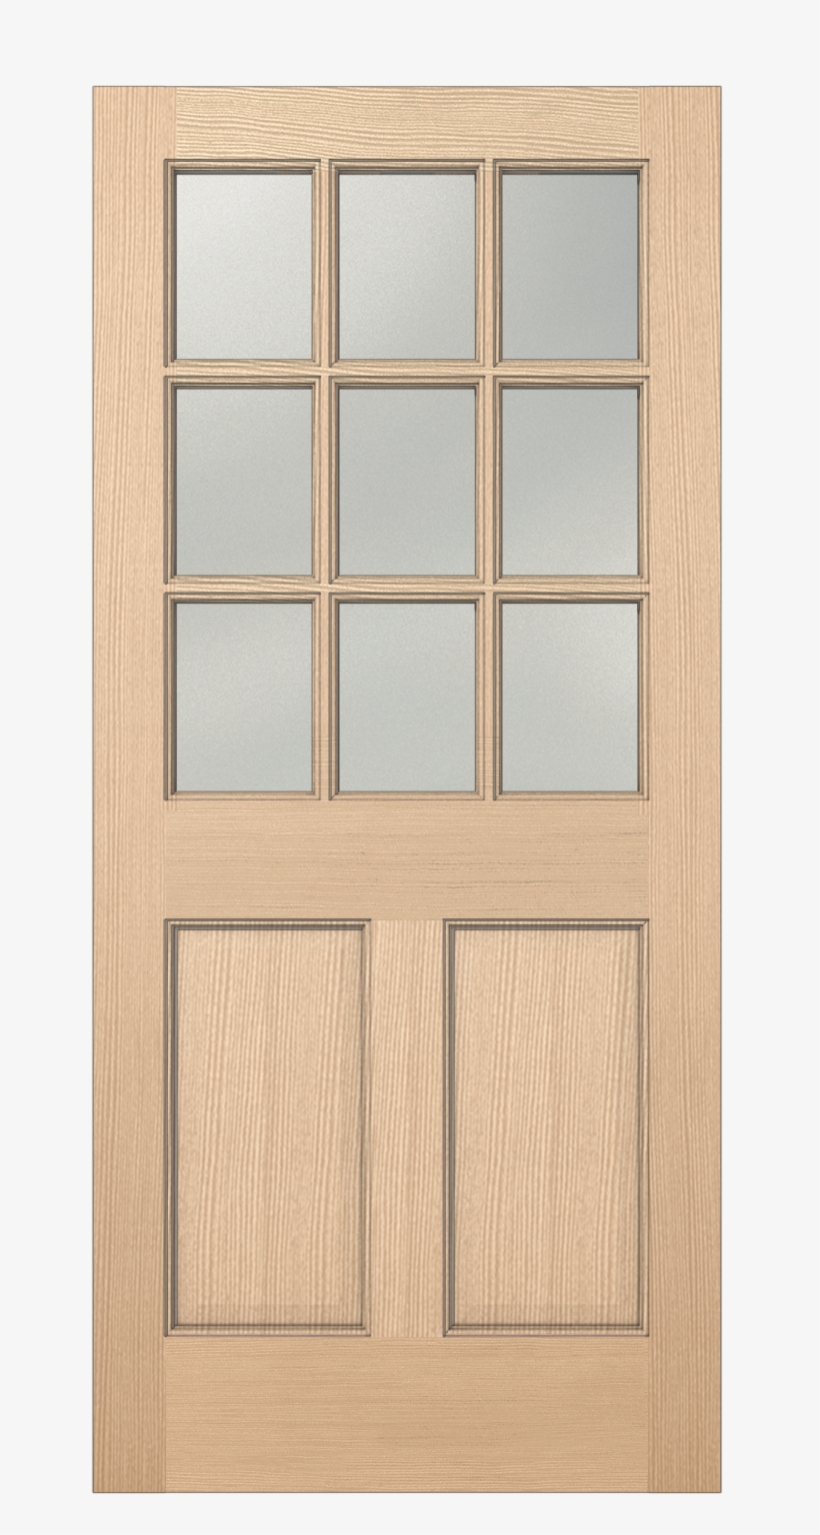 Authentic Wood Glass Panel Exterior Door - Screen Door, transparent png #1815078